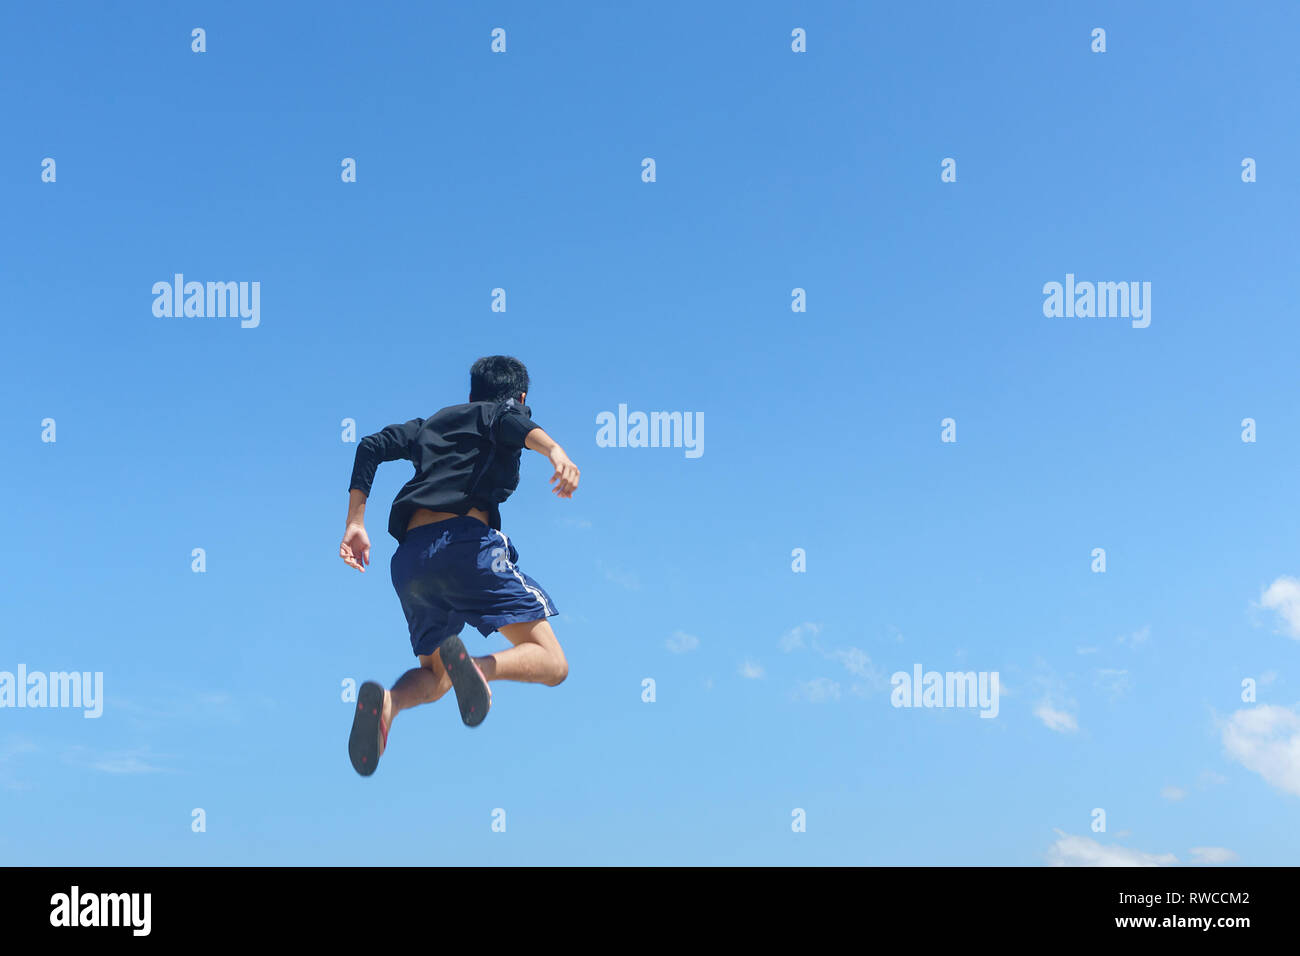 Junger Mann gegen den blauen Himmel Landschaft springen. Weiche Bild mit dem jungen Mann ist in Bewegung, wo einige verschwommen Effekt auf seinem Bein Bewegung zu zeigen. Stockfoto